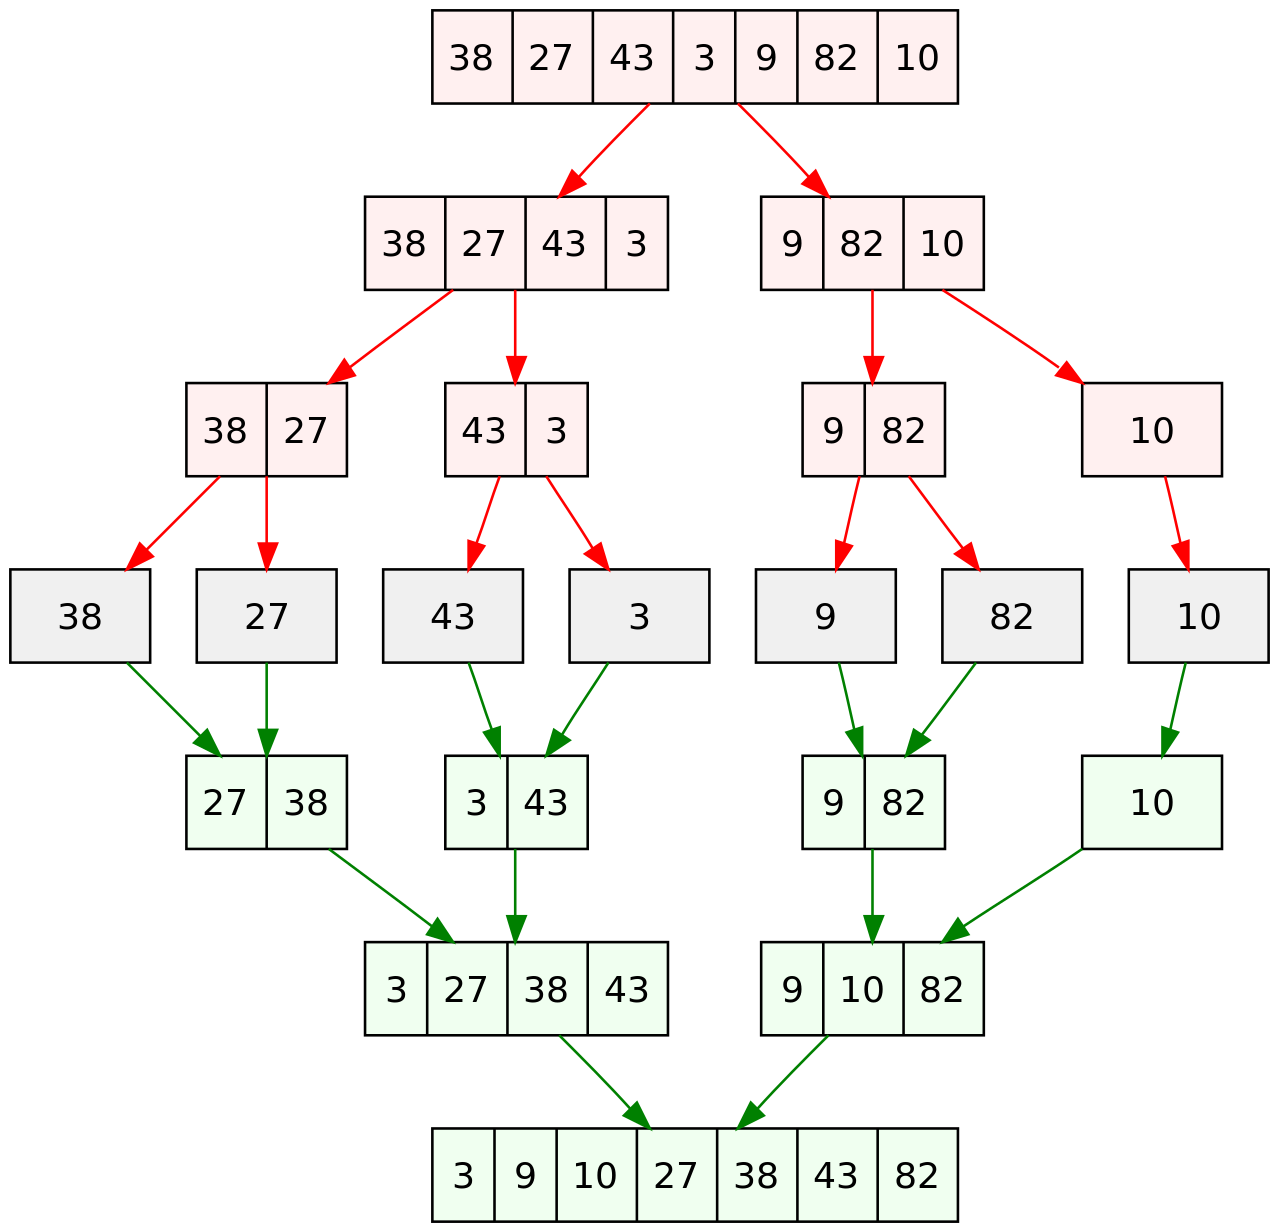 分治算法 - 归并排序 - 代码执行过程